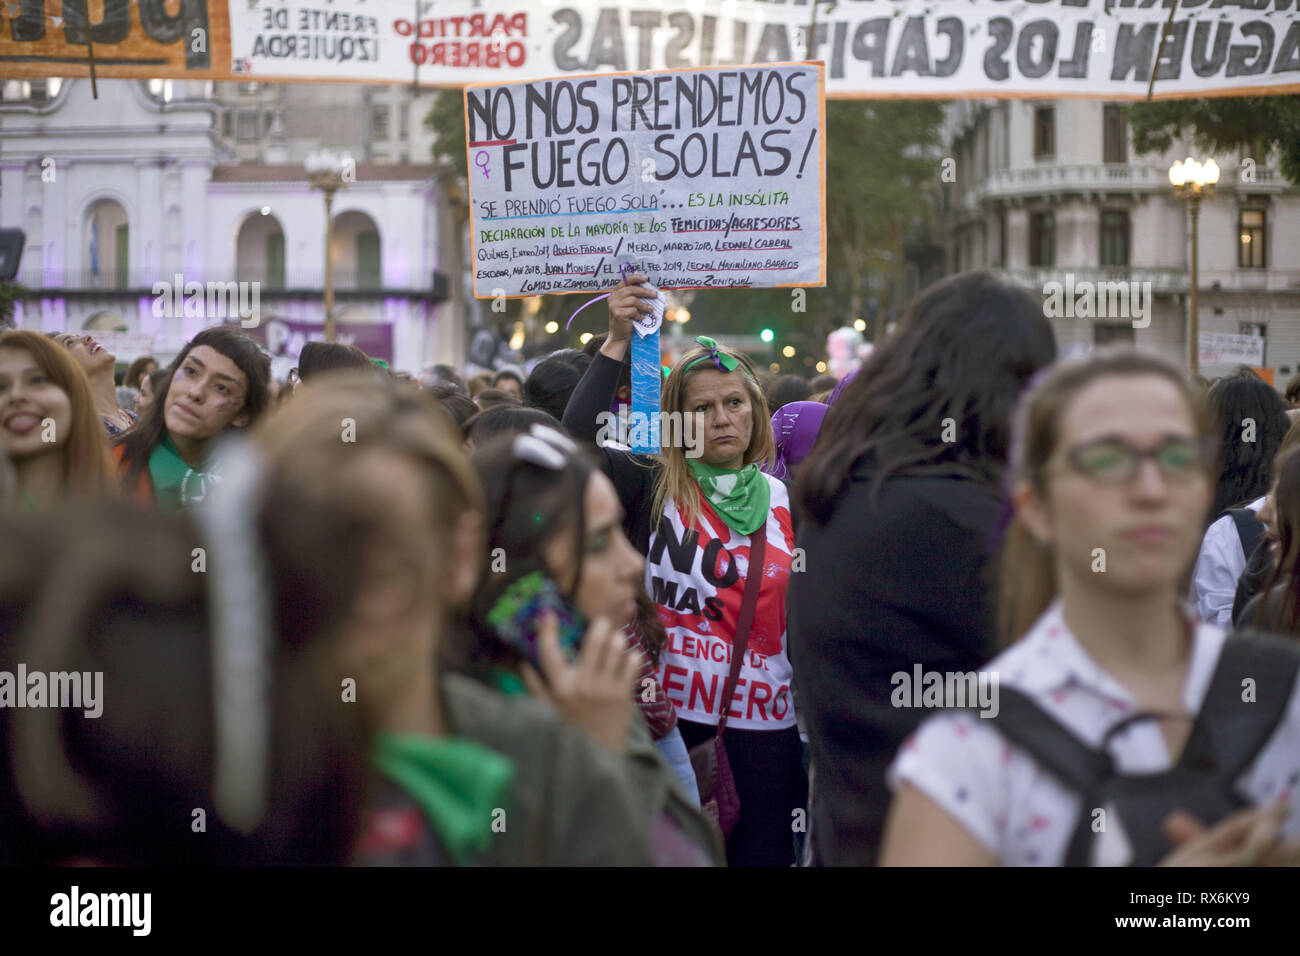 Buenos Aires, capitale fédérale, l'Argentine. Mar 8, 2019. À l'occasion de la Journée internationale de la femme, des groupes féministes de partout au pays ont appelé à une marche à travers le pays. À environ 8:30 h, plus de 100 mille personnes ont participé à la mobilisation et la concentration.Dans le centre de Buenos Aires, depuis le matin, différents groupes de femmes sont descendus dans la rue pour faire entendre leurs revendications. Dans les rues entourant le Congrès national il y a plusieurs groupes qui a affirmé dès les premières heures de l'après-midi pour les droits des femmes. (Crédit Image : © Roberto UN Banque D'Images